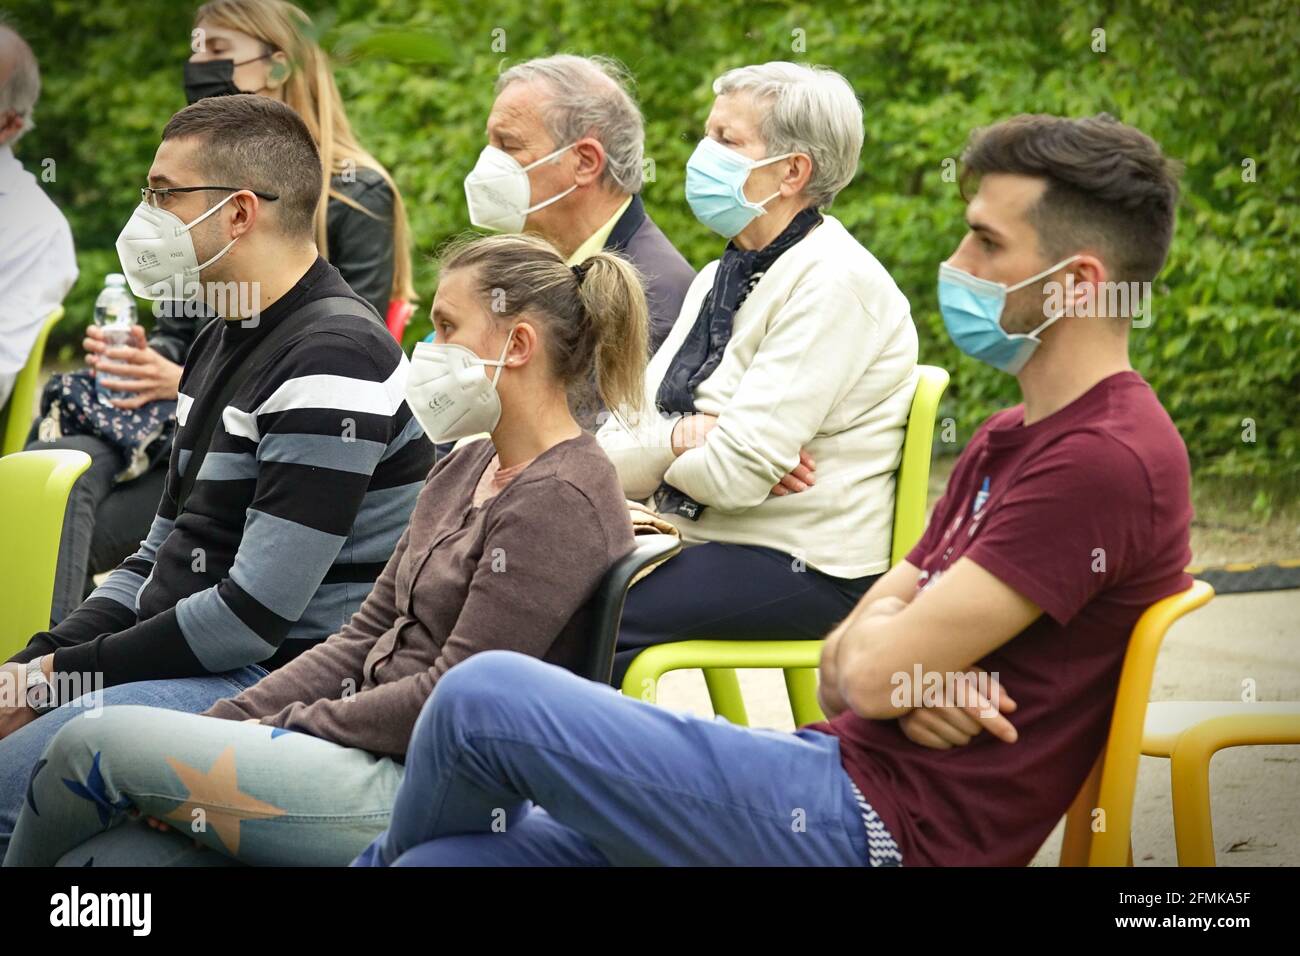 Public portant des masques de covid lors de la première partie dans un parc extérieur pour la réouverture post-pandémie. Milan, Italie - mai 2021 Banque D'Images